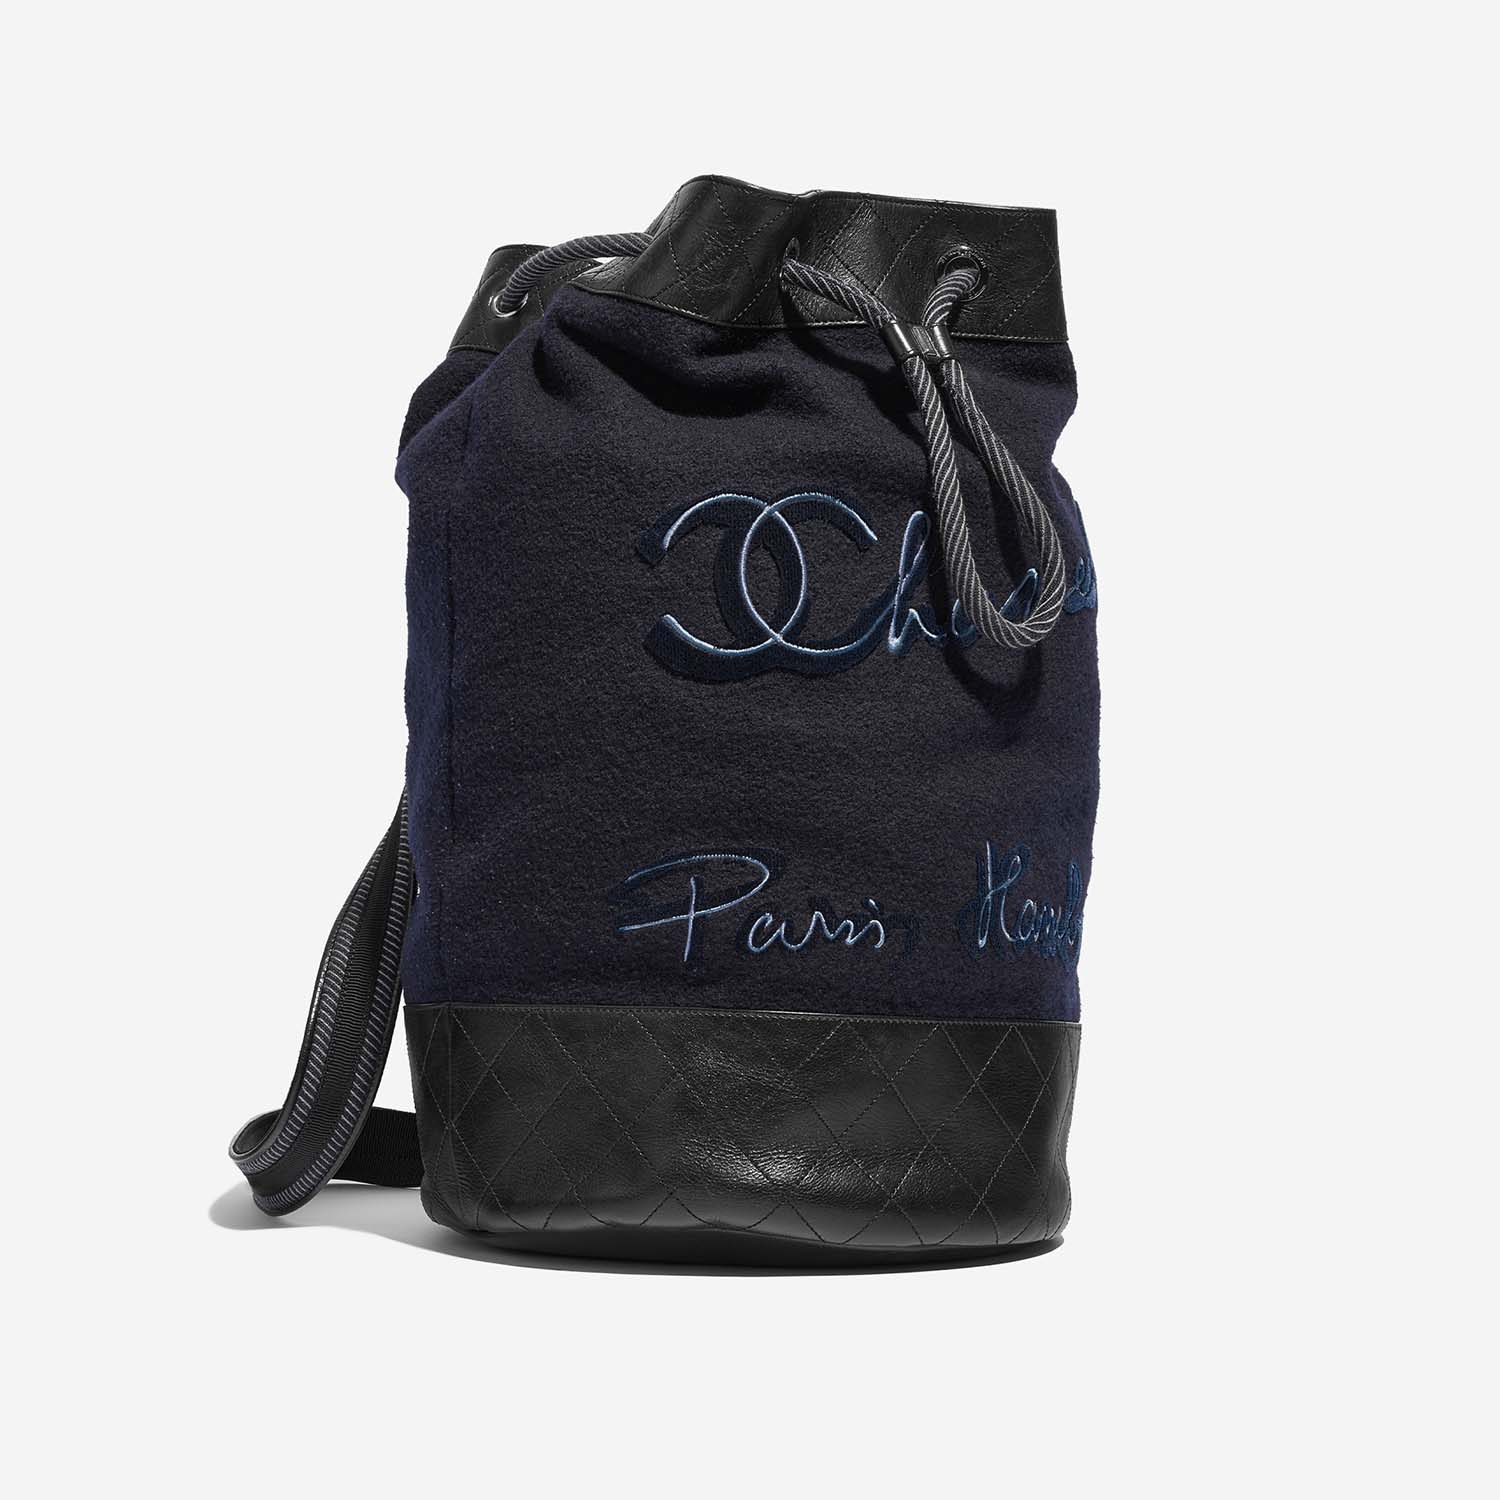 Chanel Rucksack Blau-Schwarz Side Front | Verkaufen Sie Ihre Designer-Tasche auf Saclab.com